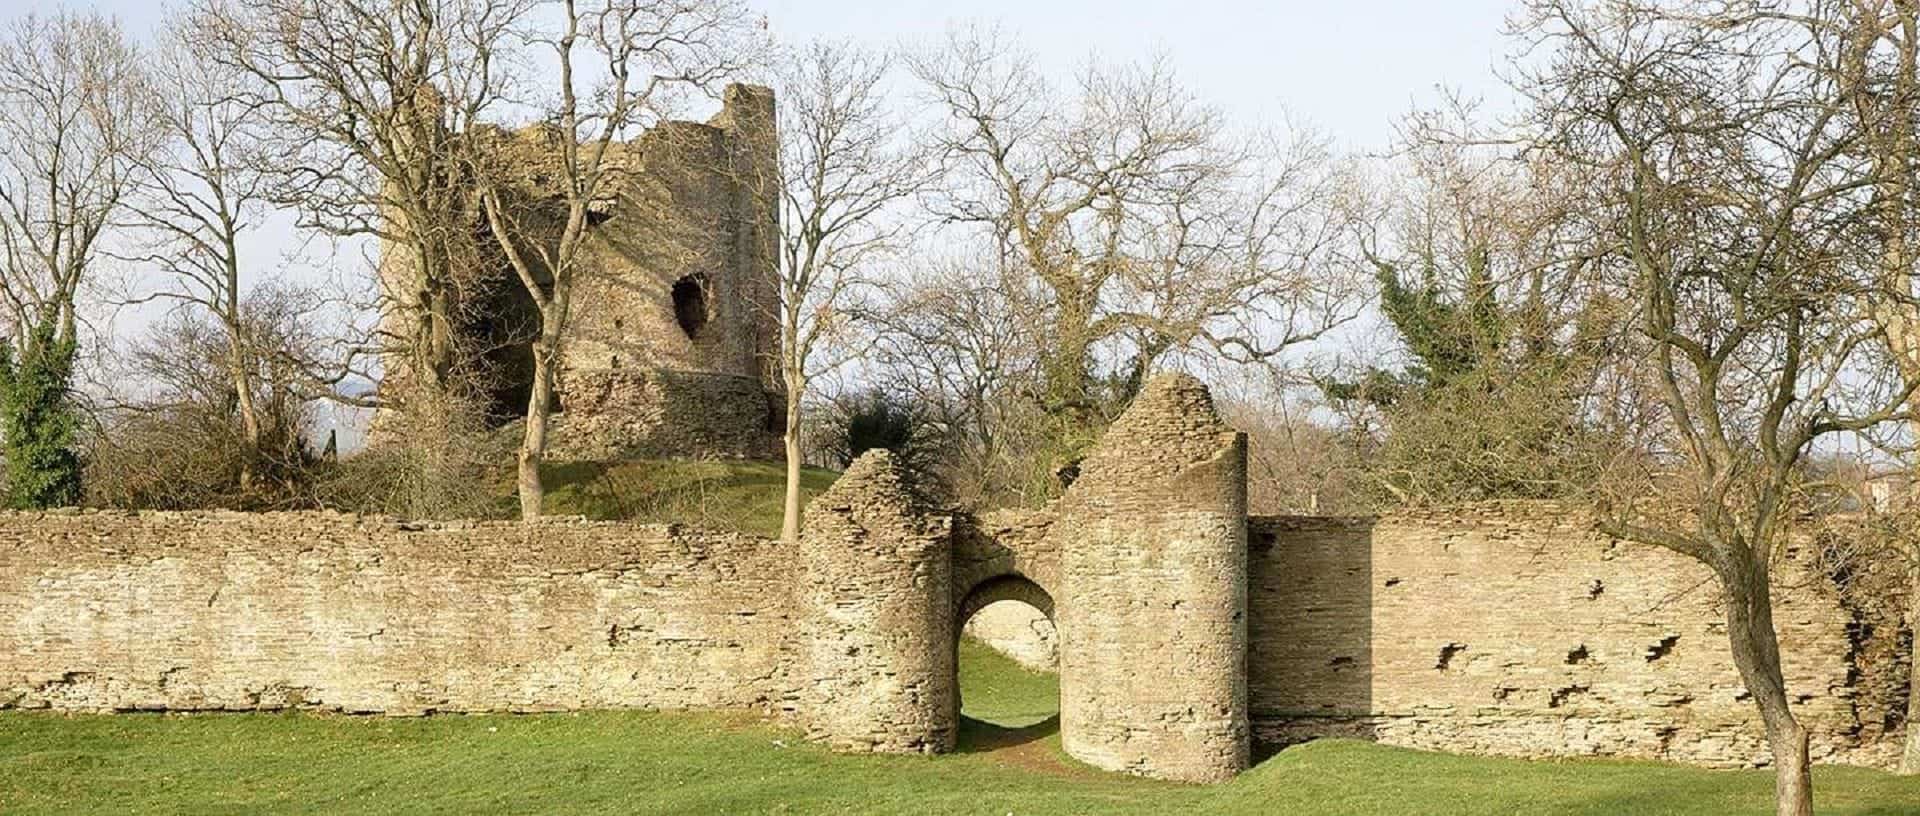 Longtown Castle in UK